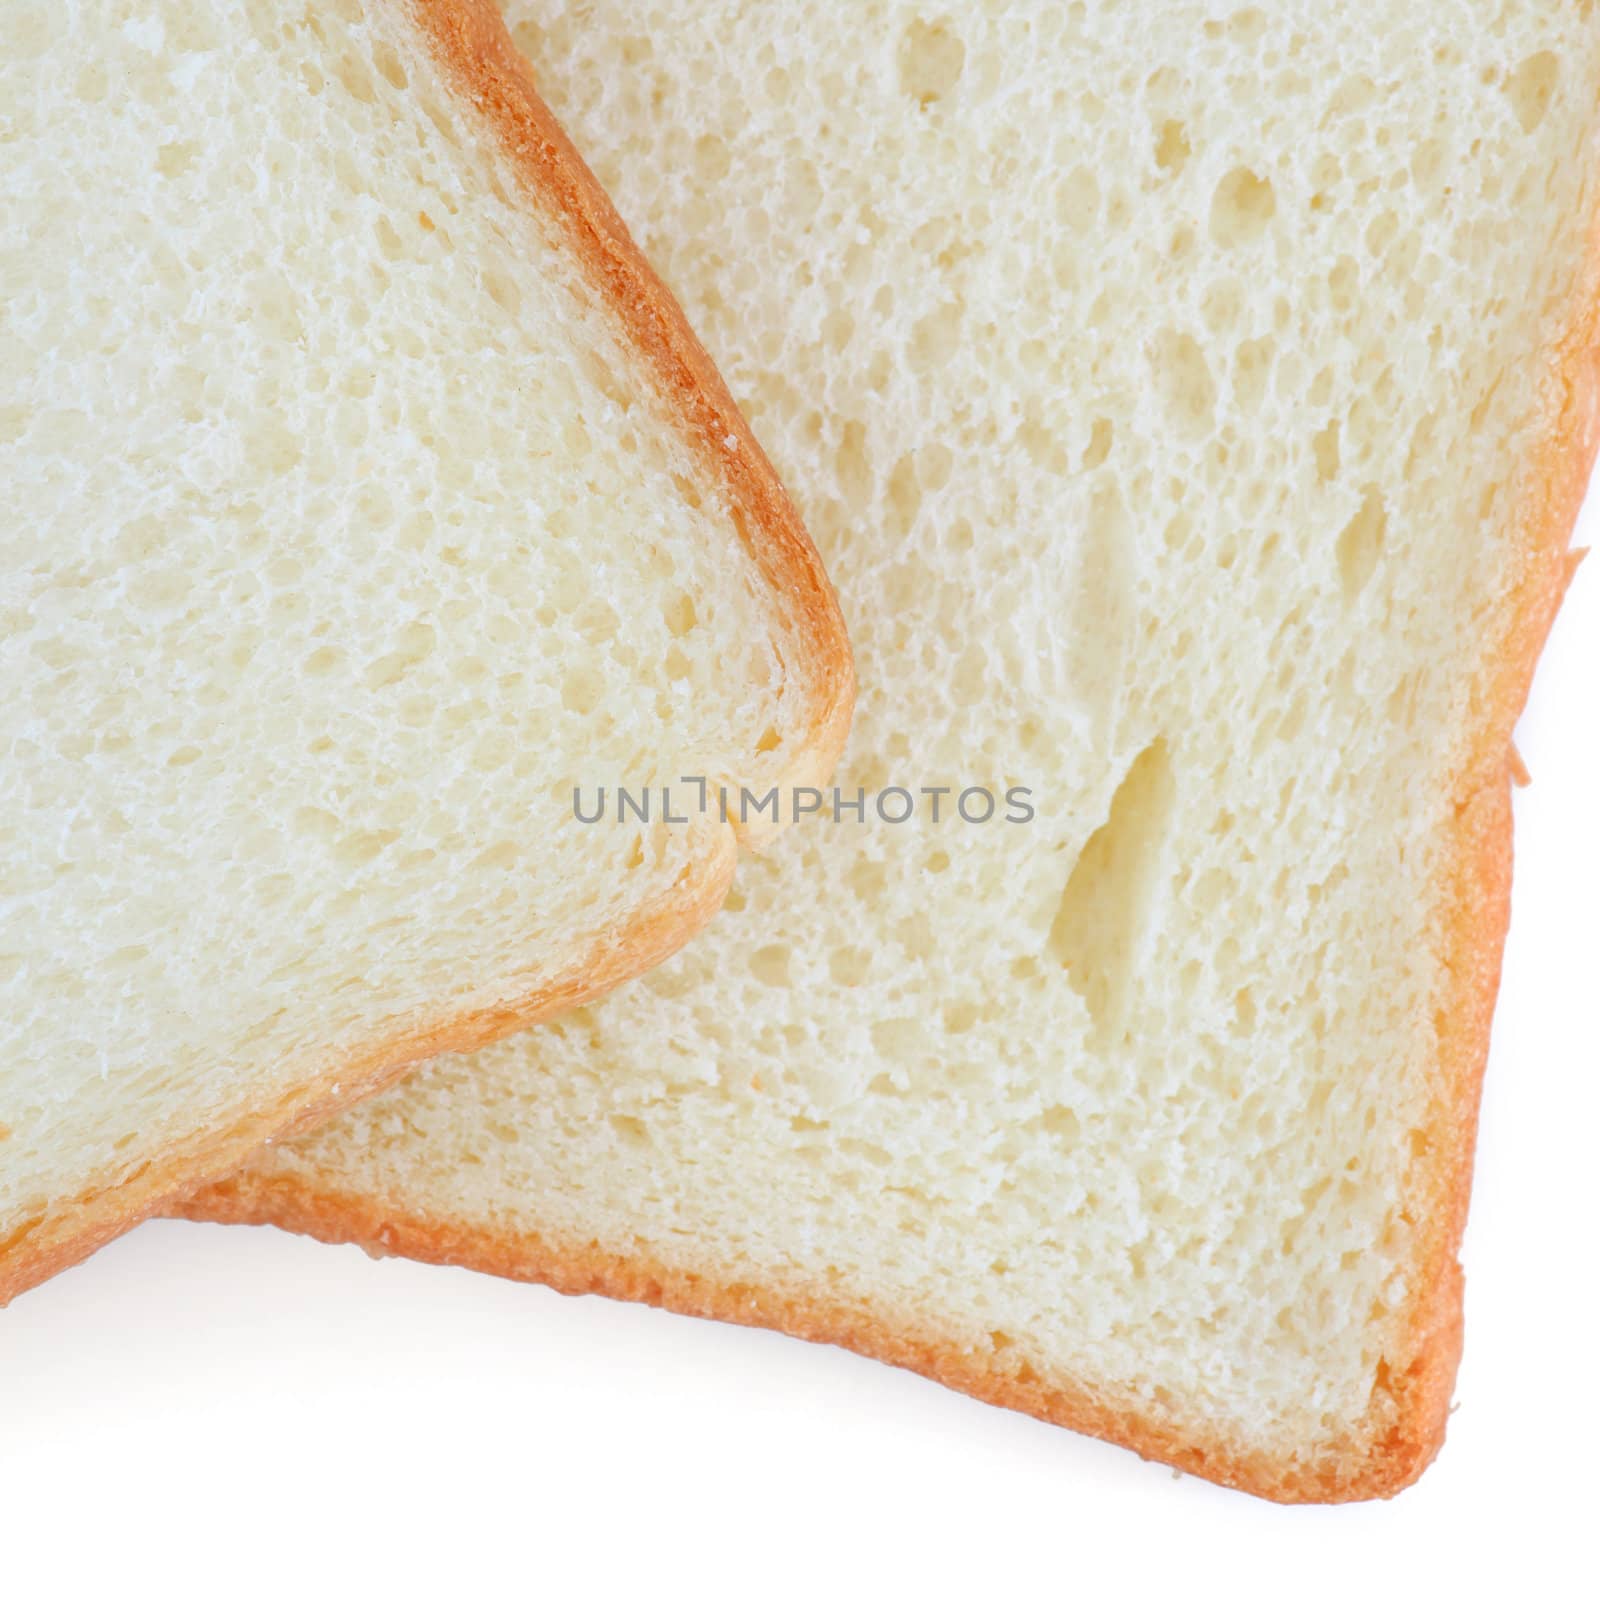 Bread by antpkr